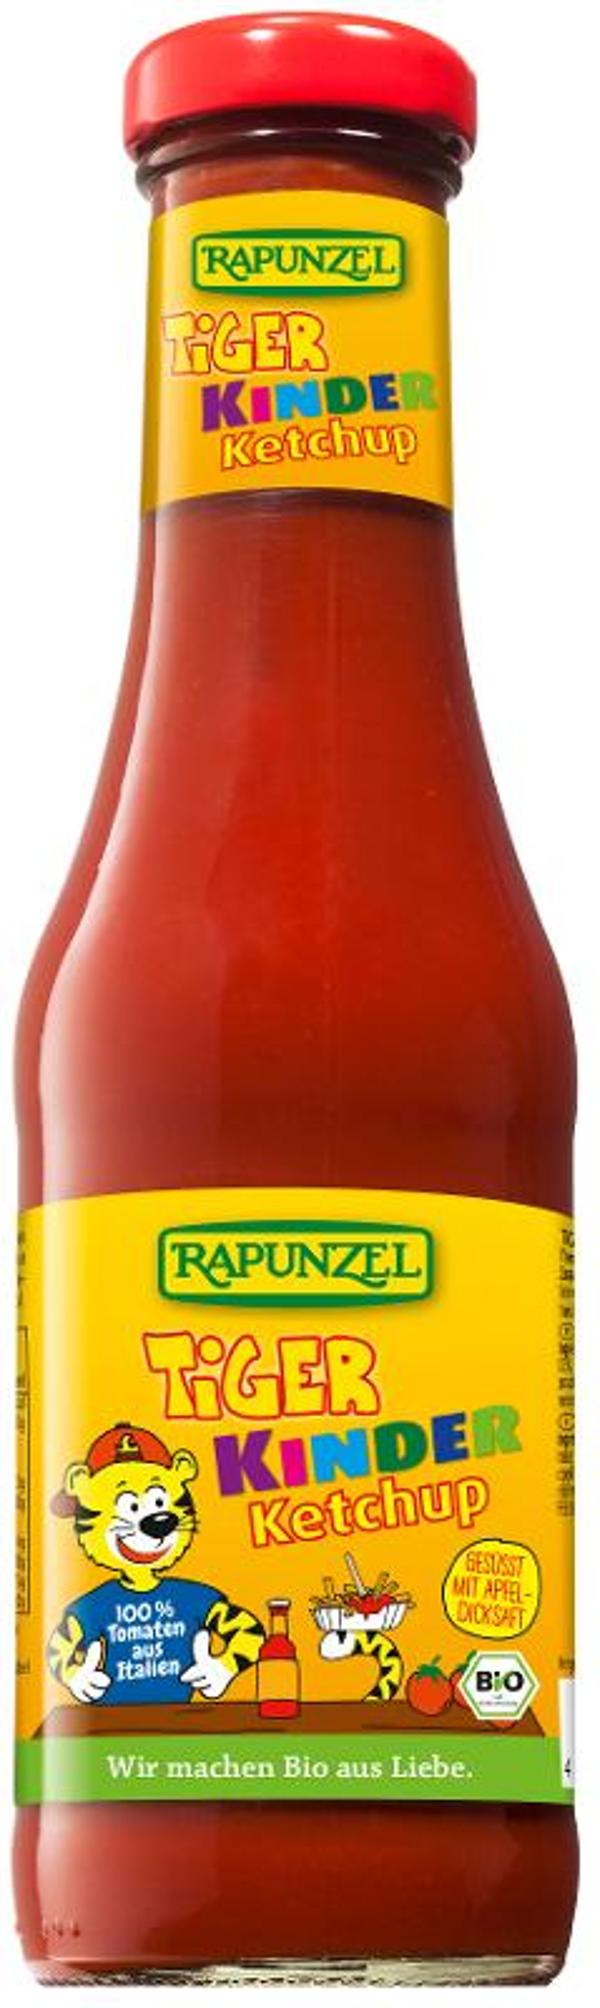 Produktfoto zu Tiger Kinder Ketchup in der Glasflasche 450ml Rapunzel